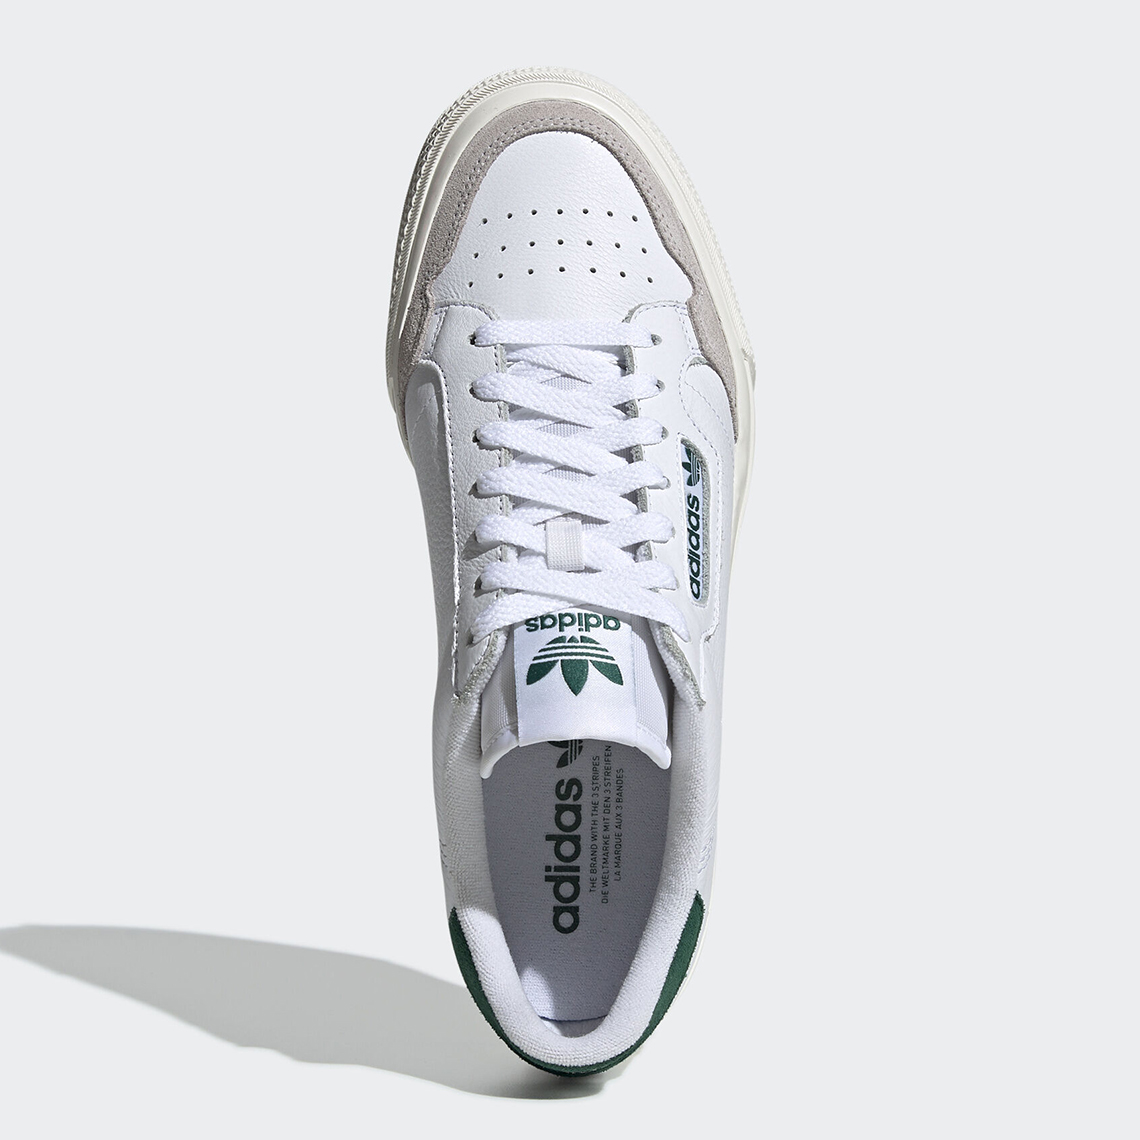 adidas continental 80 vulc white green